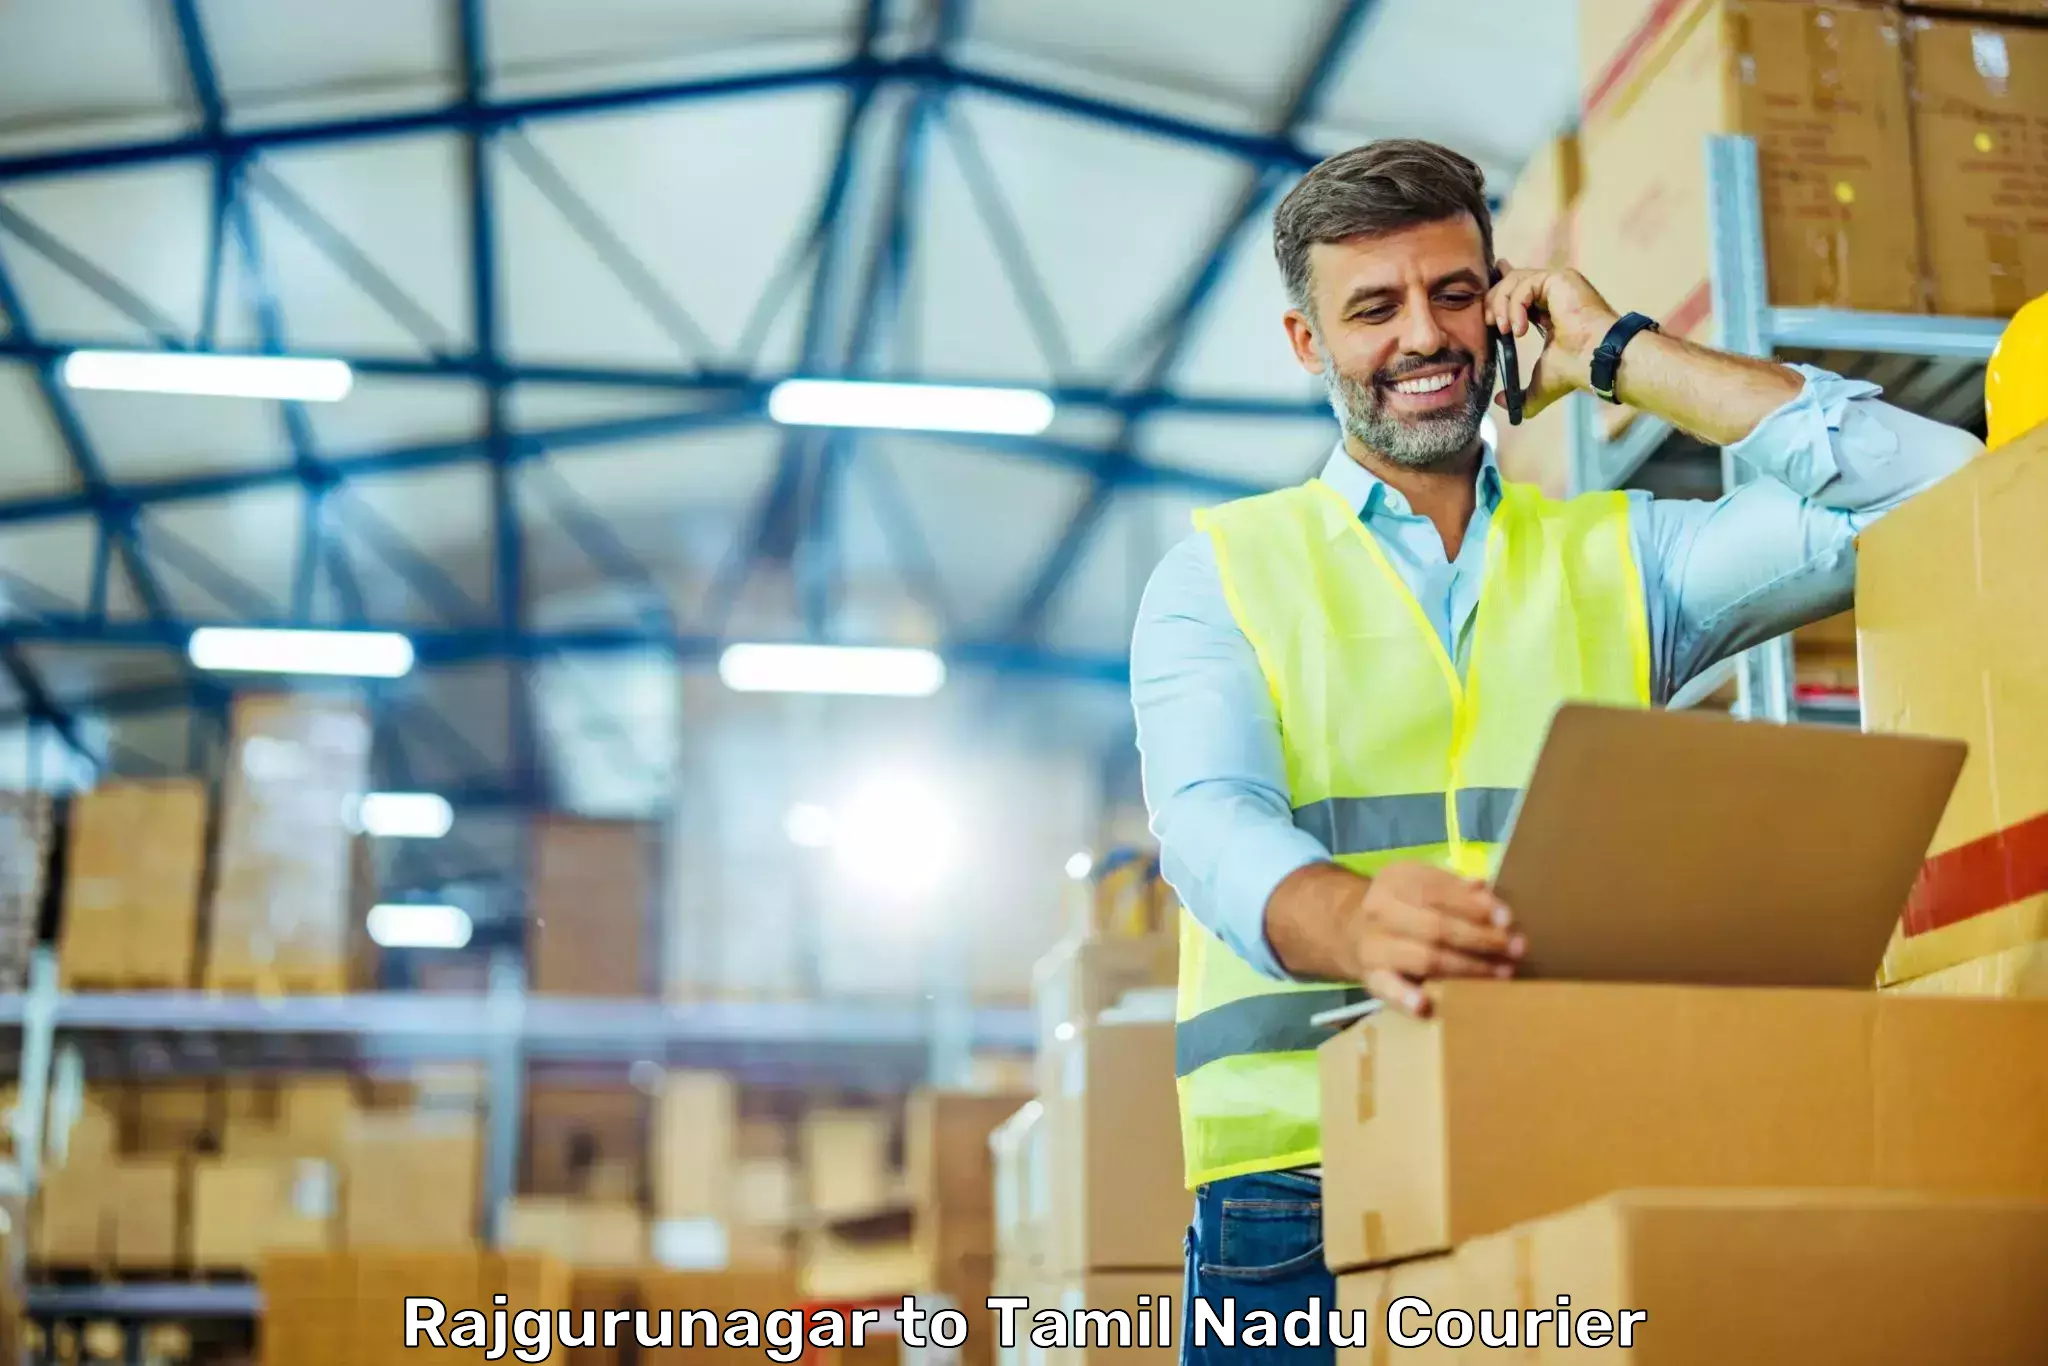 High-performance logistics Rajgurunagar to Eraiyur